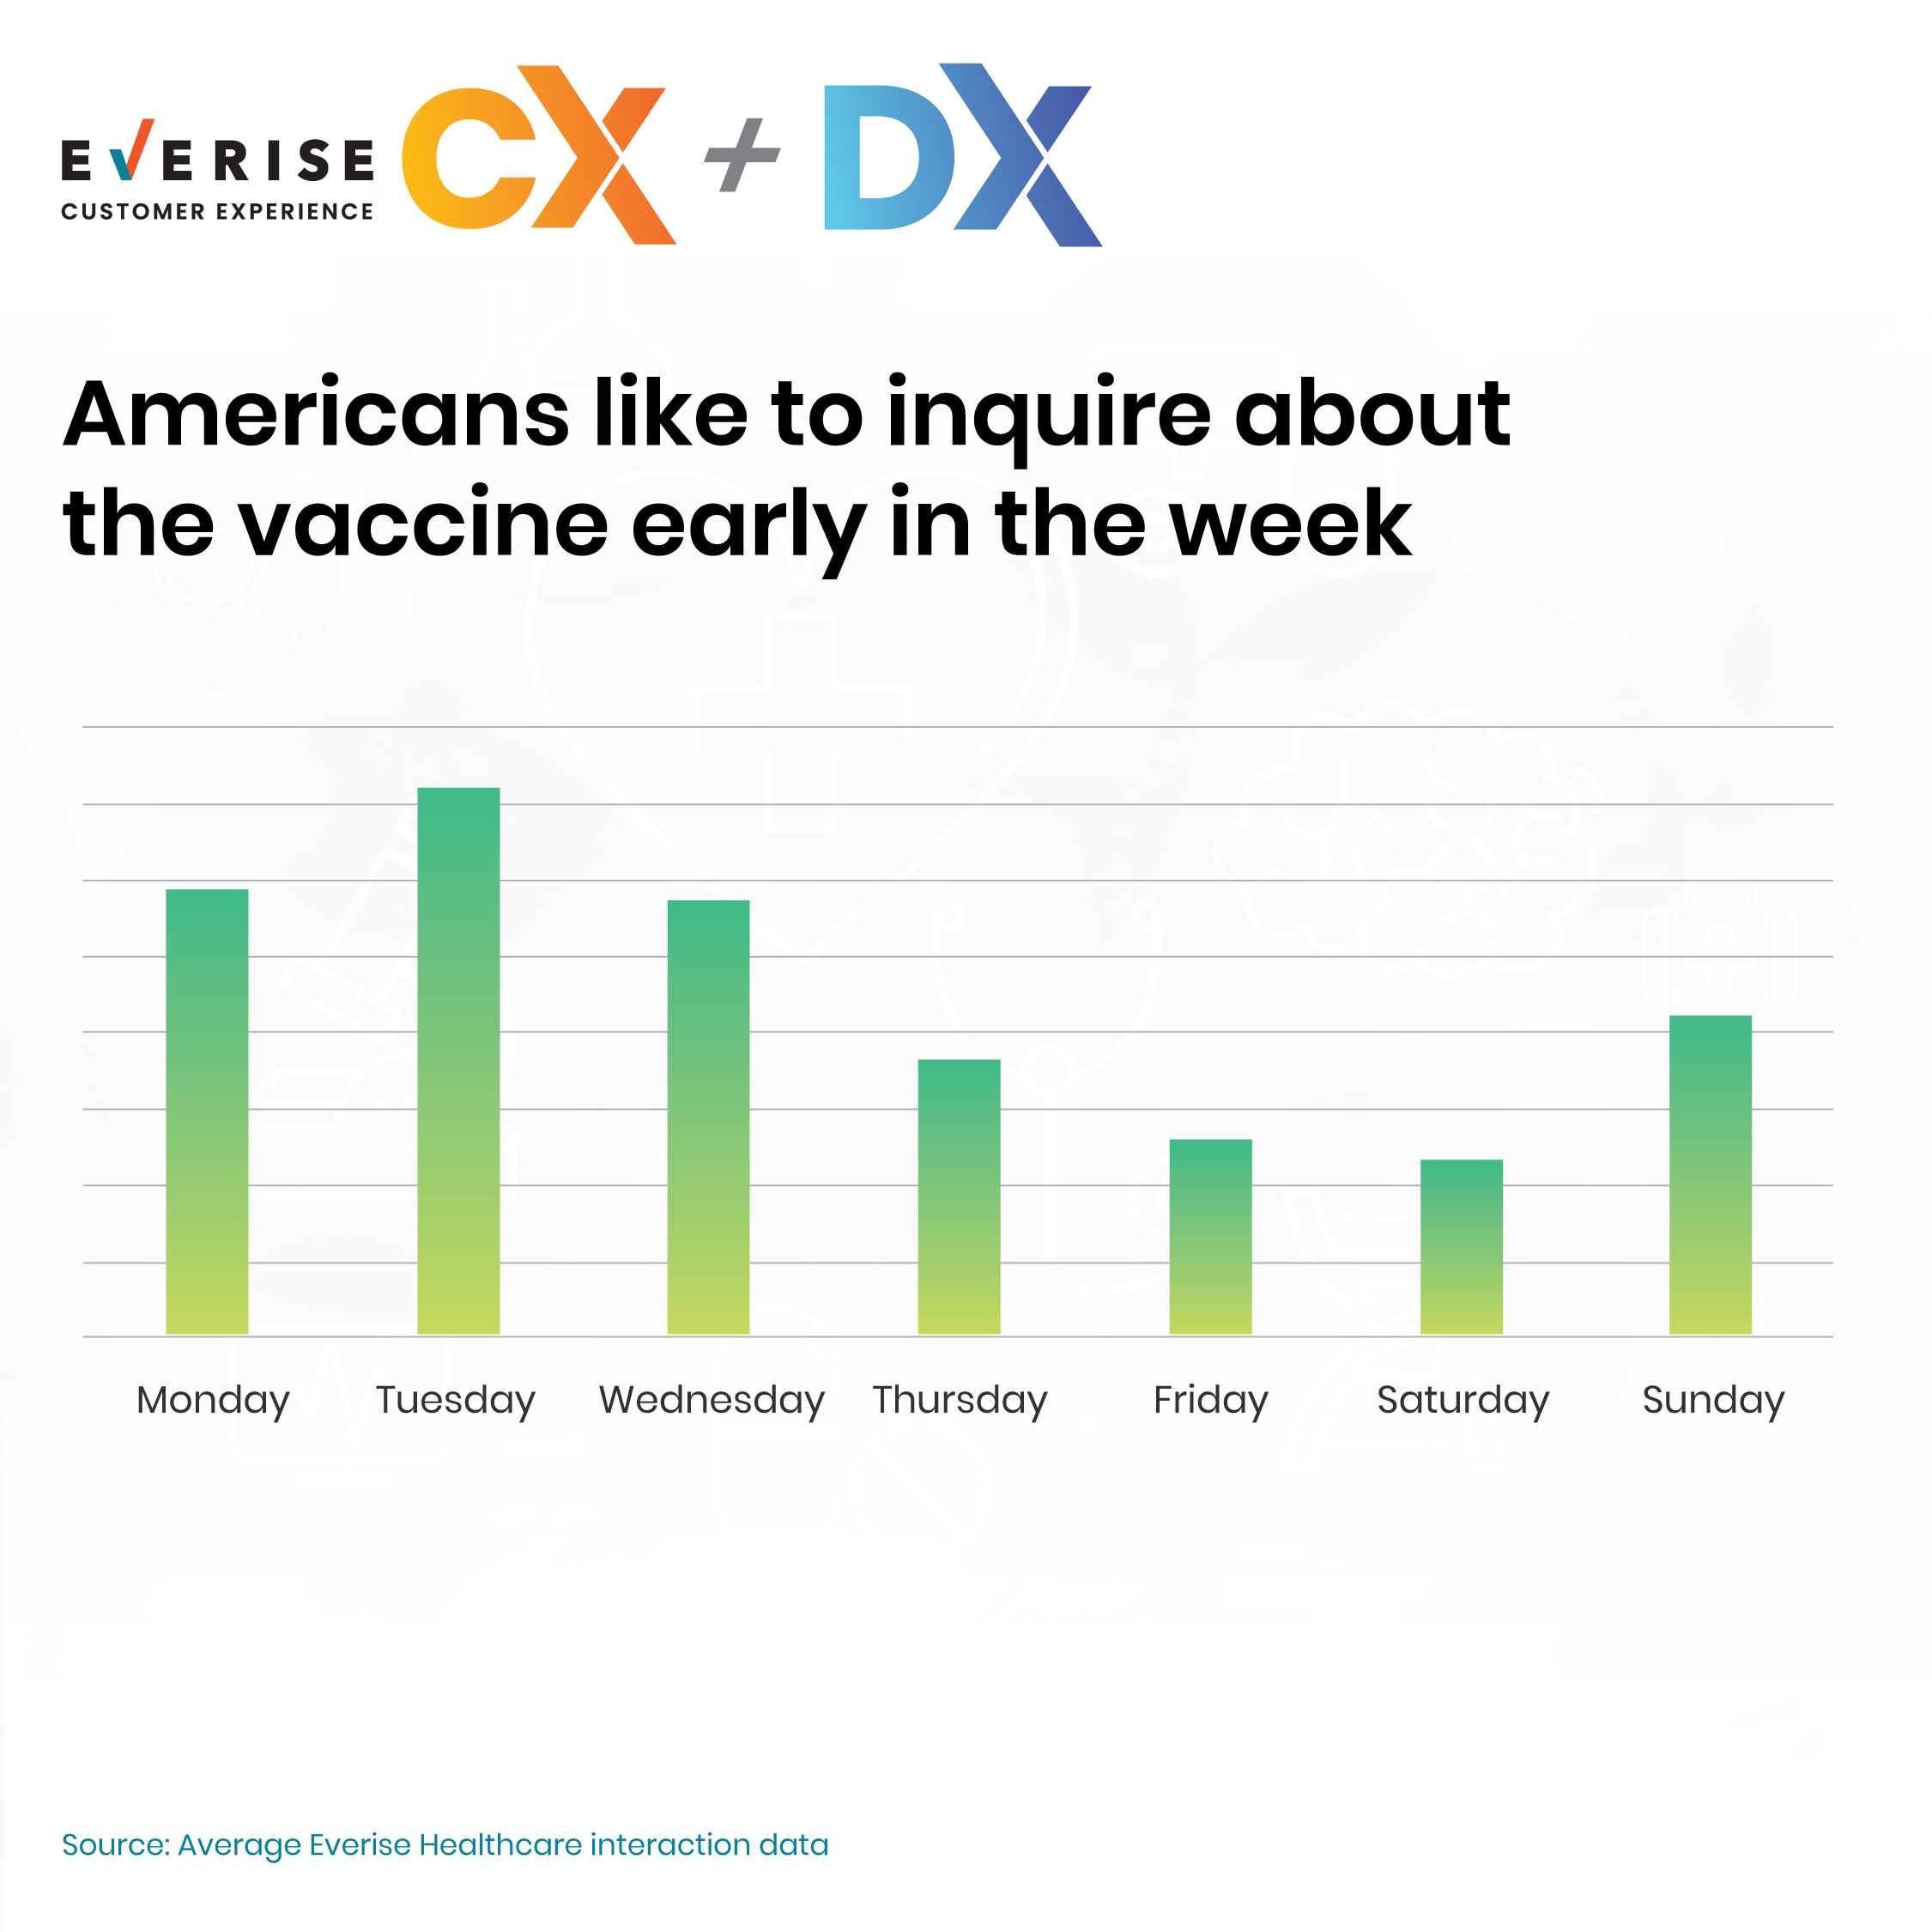 Vaccine Inquiry in a Week